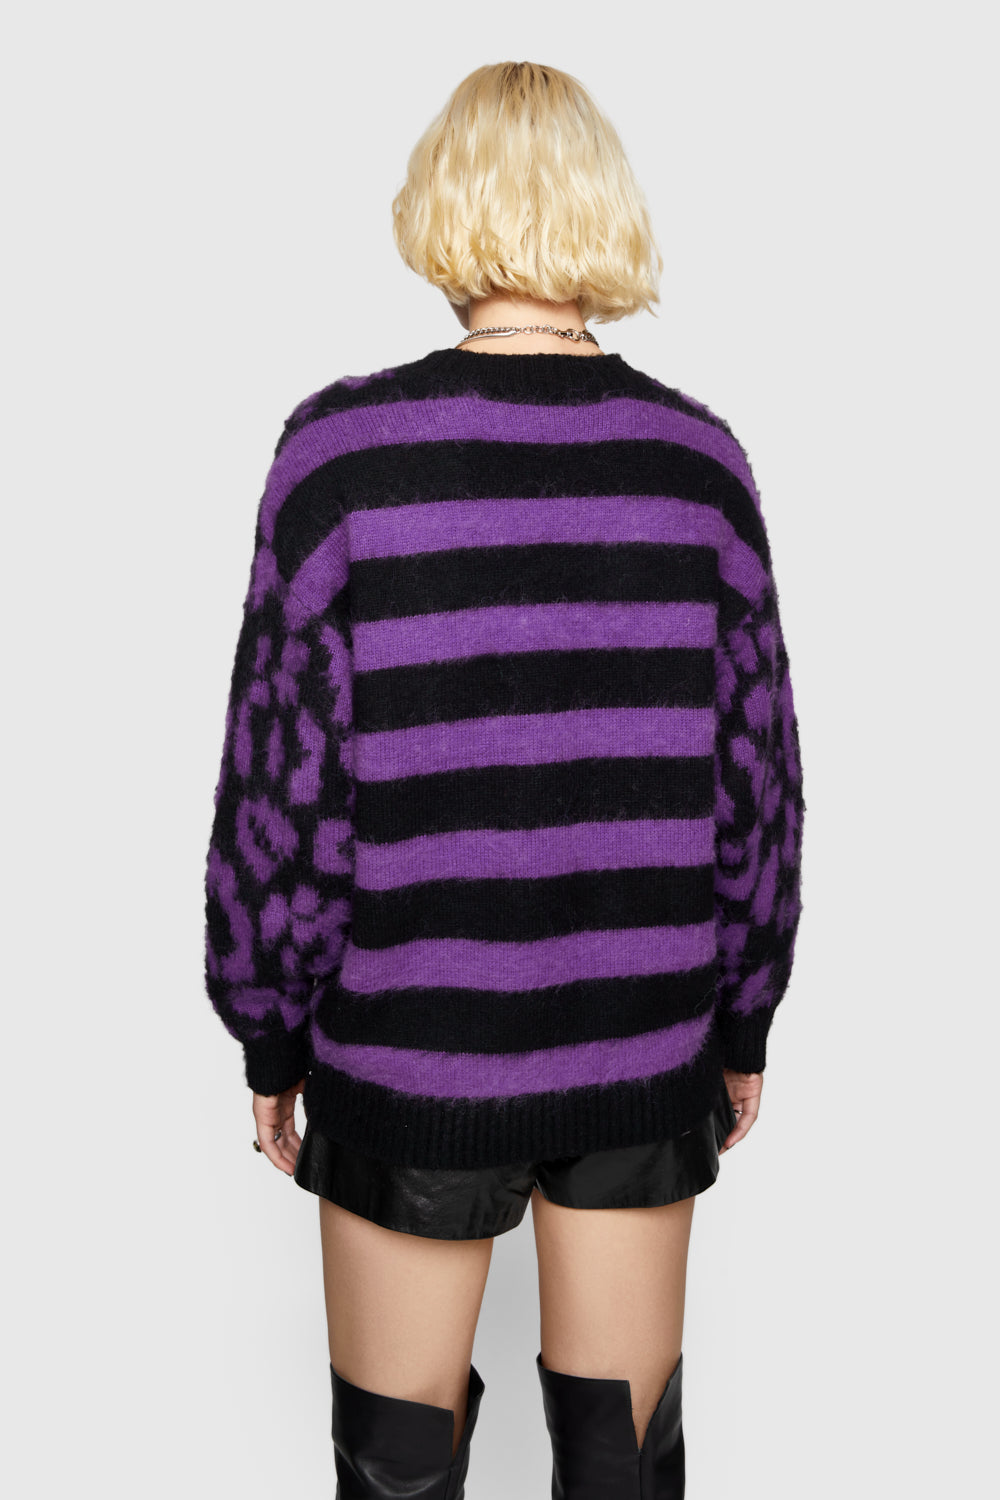 Gordon Leopard Sweater